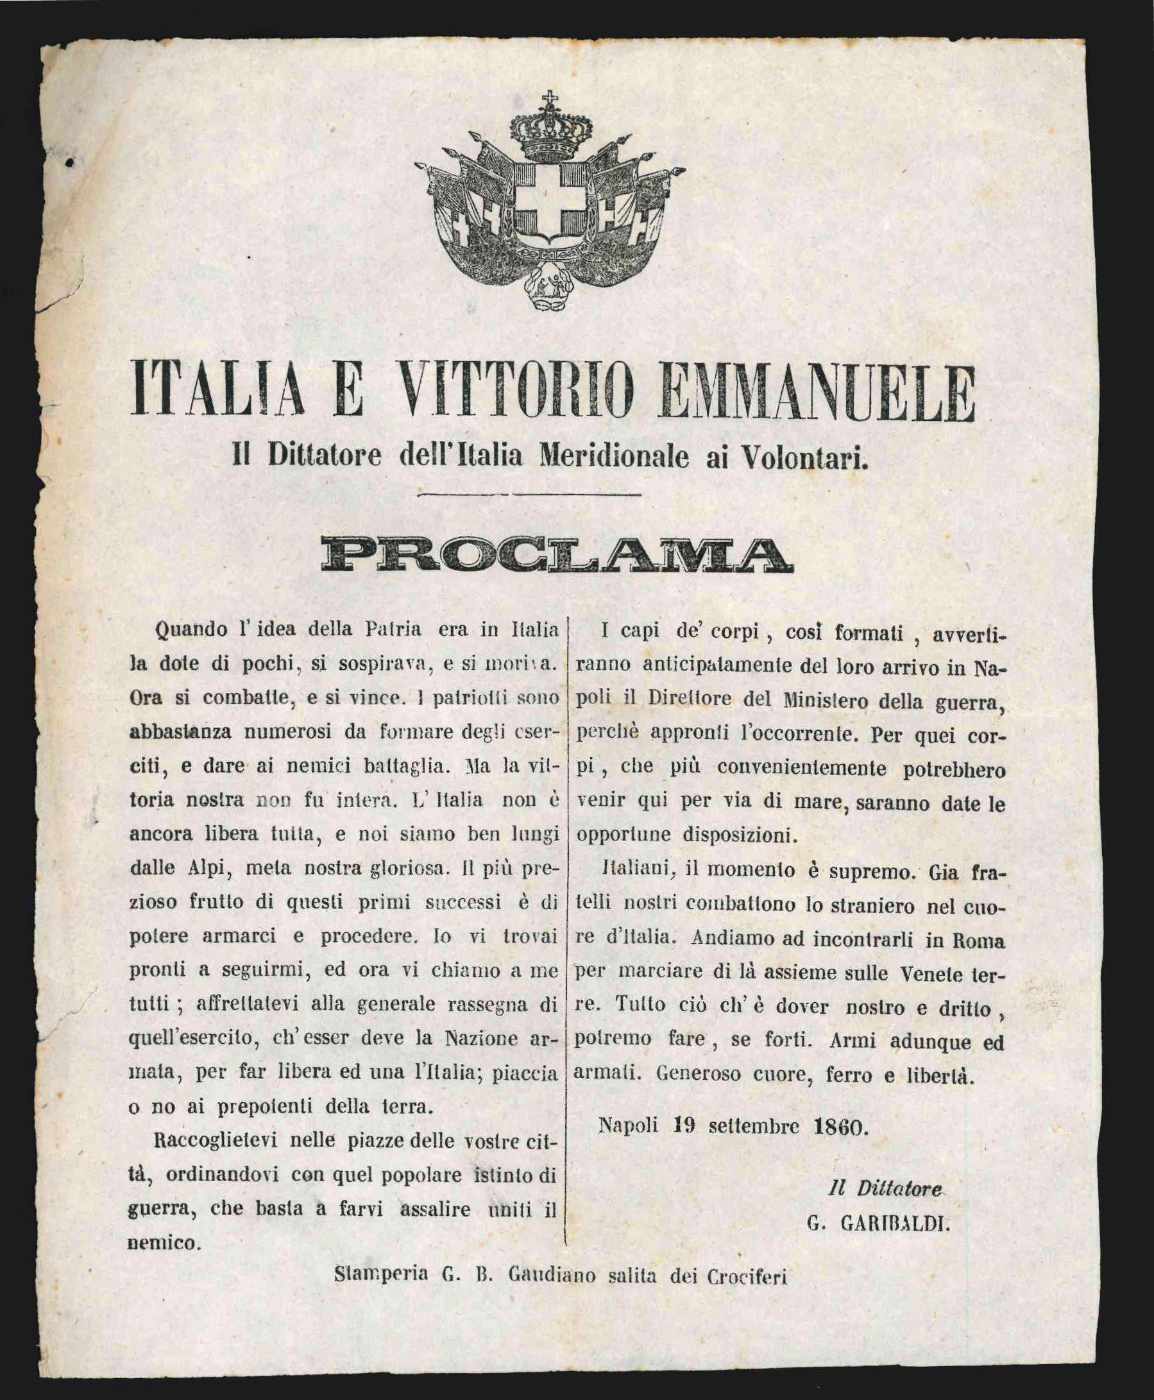 italia e vittorio emmanuele - il dittatore dell italia meridionale ai volontari - proclama